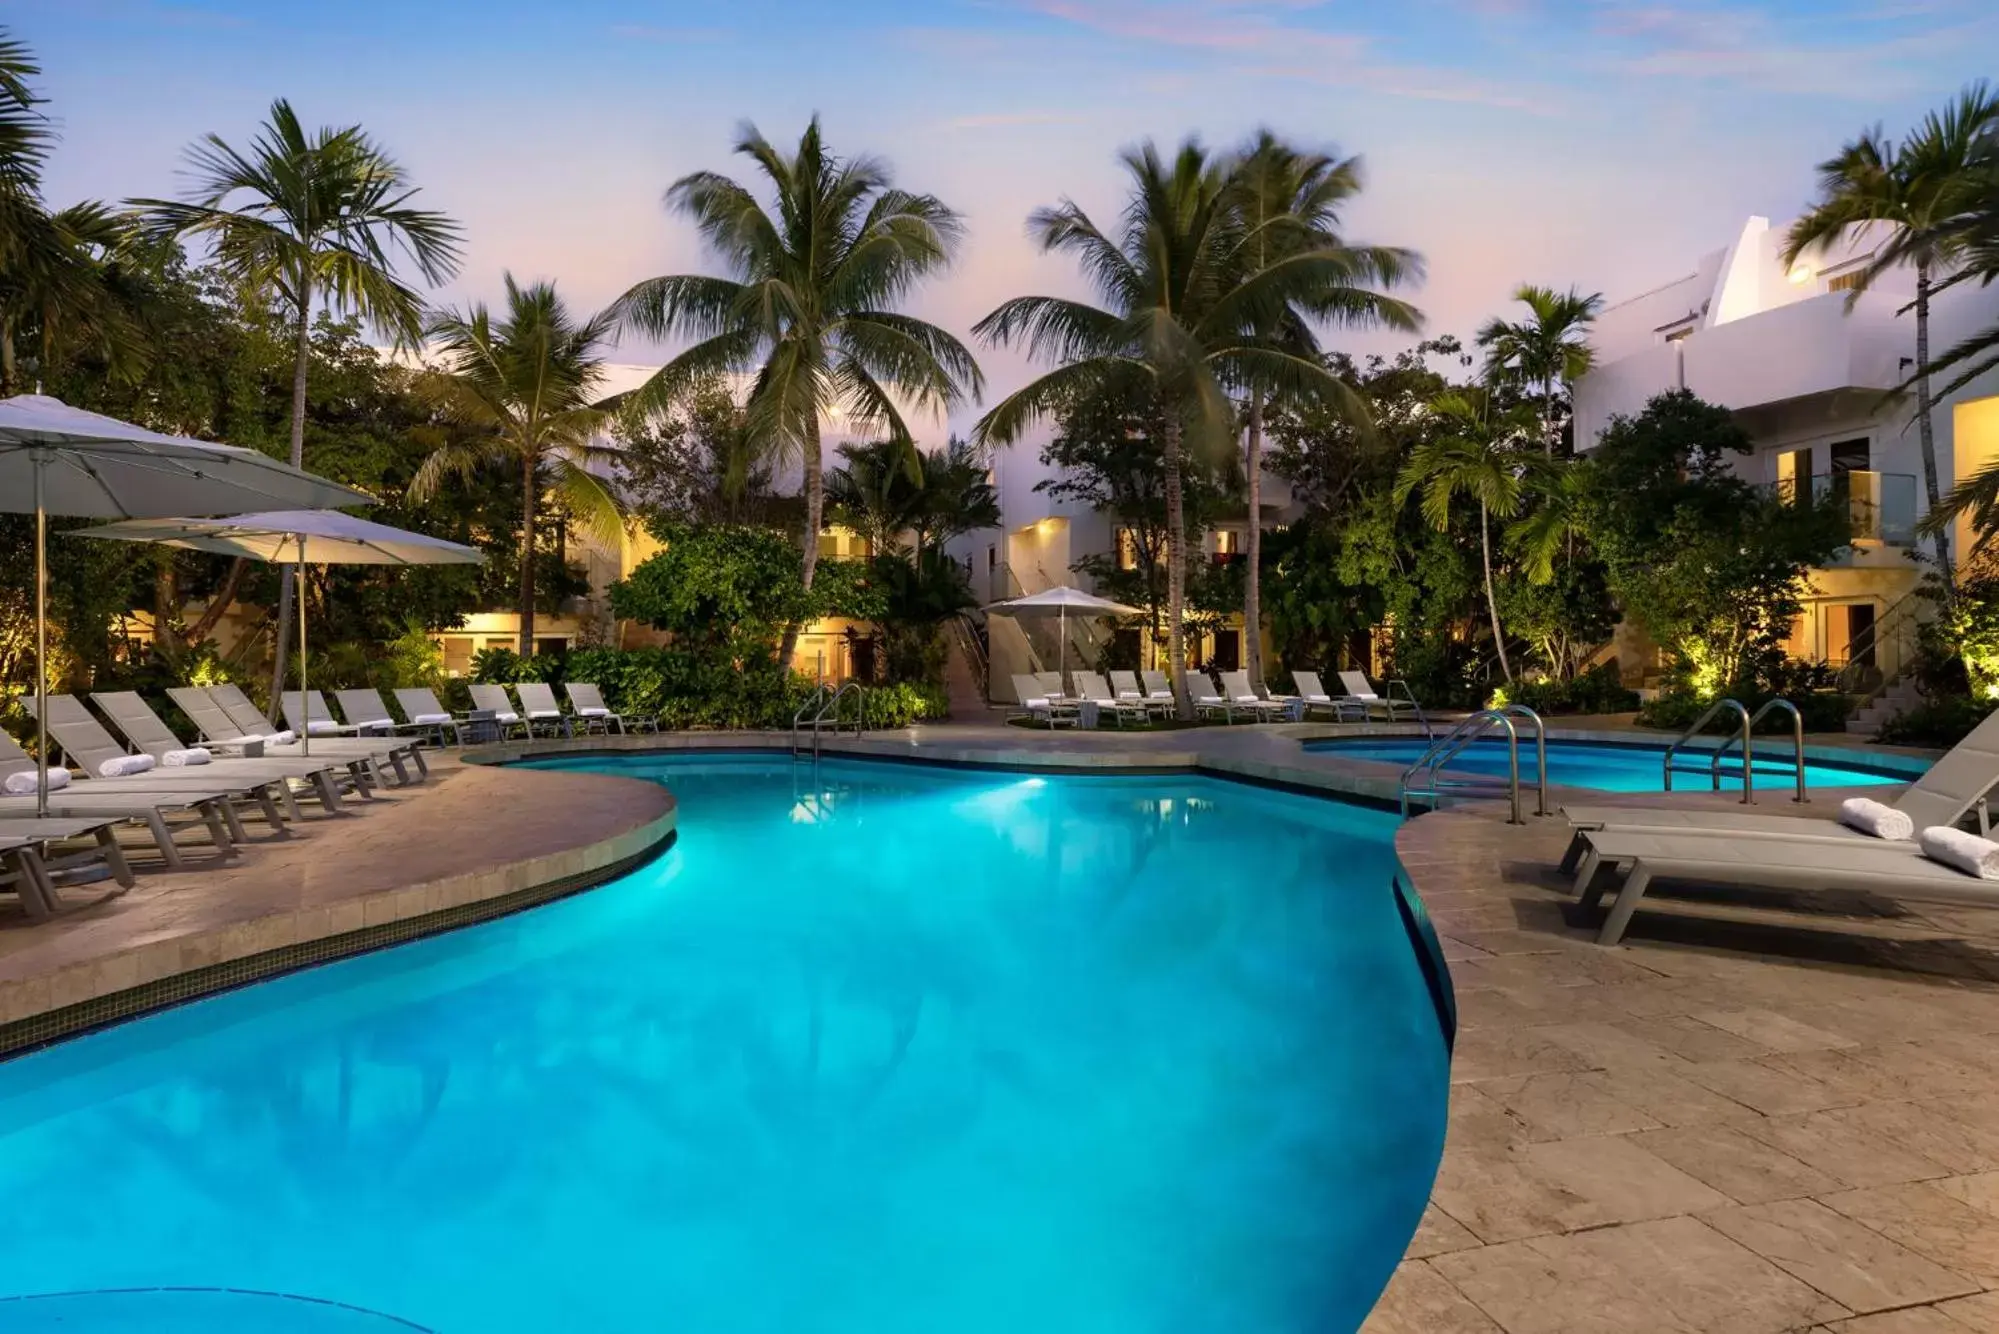 Swimming Pool in Santa Maria Suites Resort